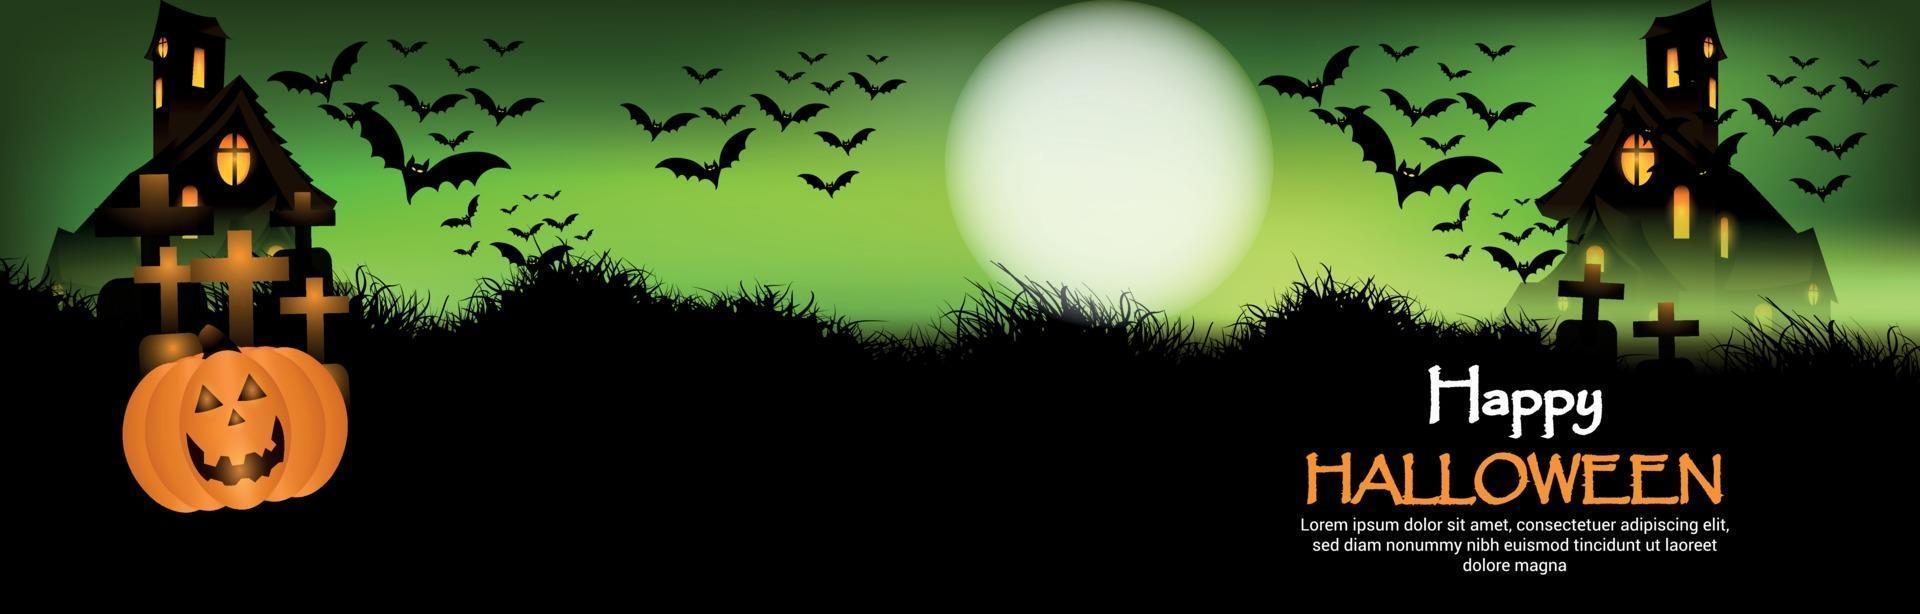 Feliz fondo de noche de terror de halloween con casa embrujada y murciélagos voladores vector